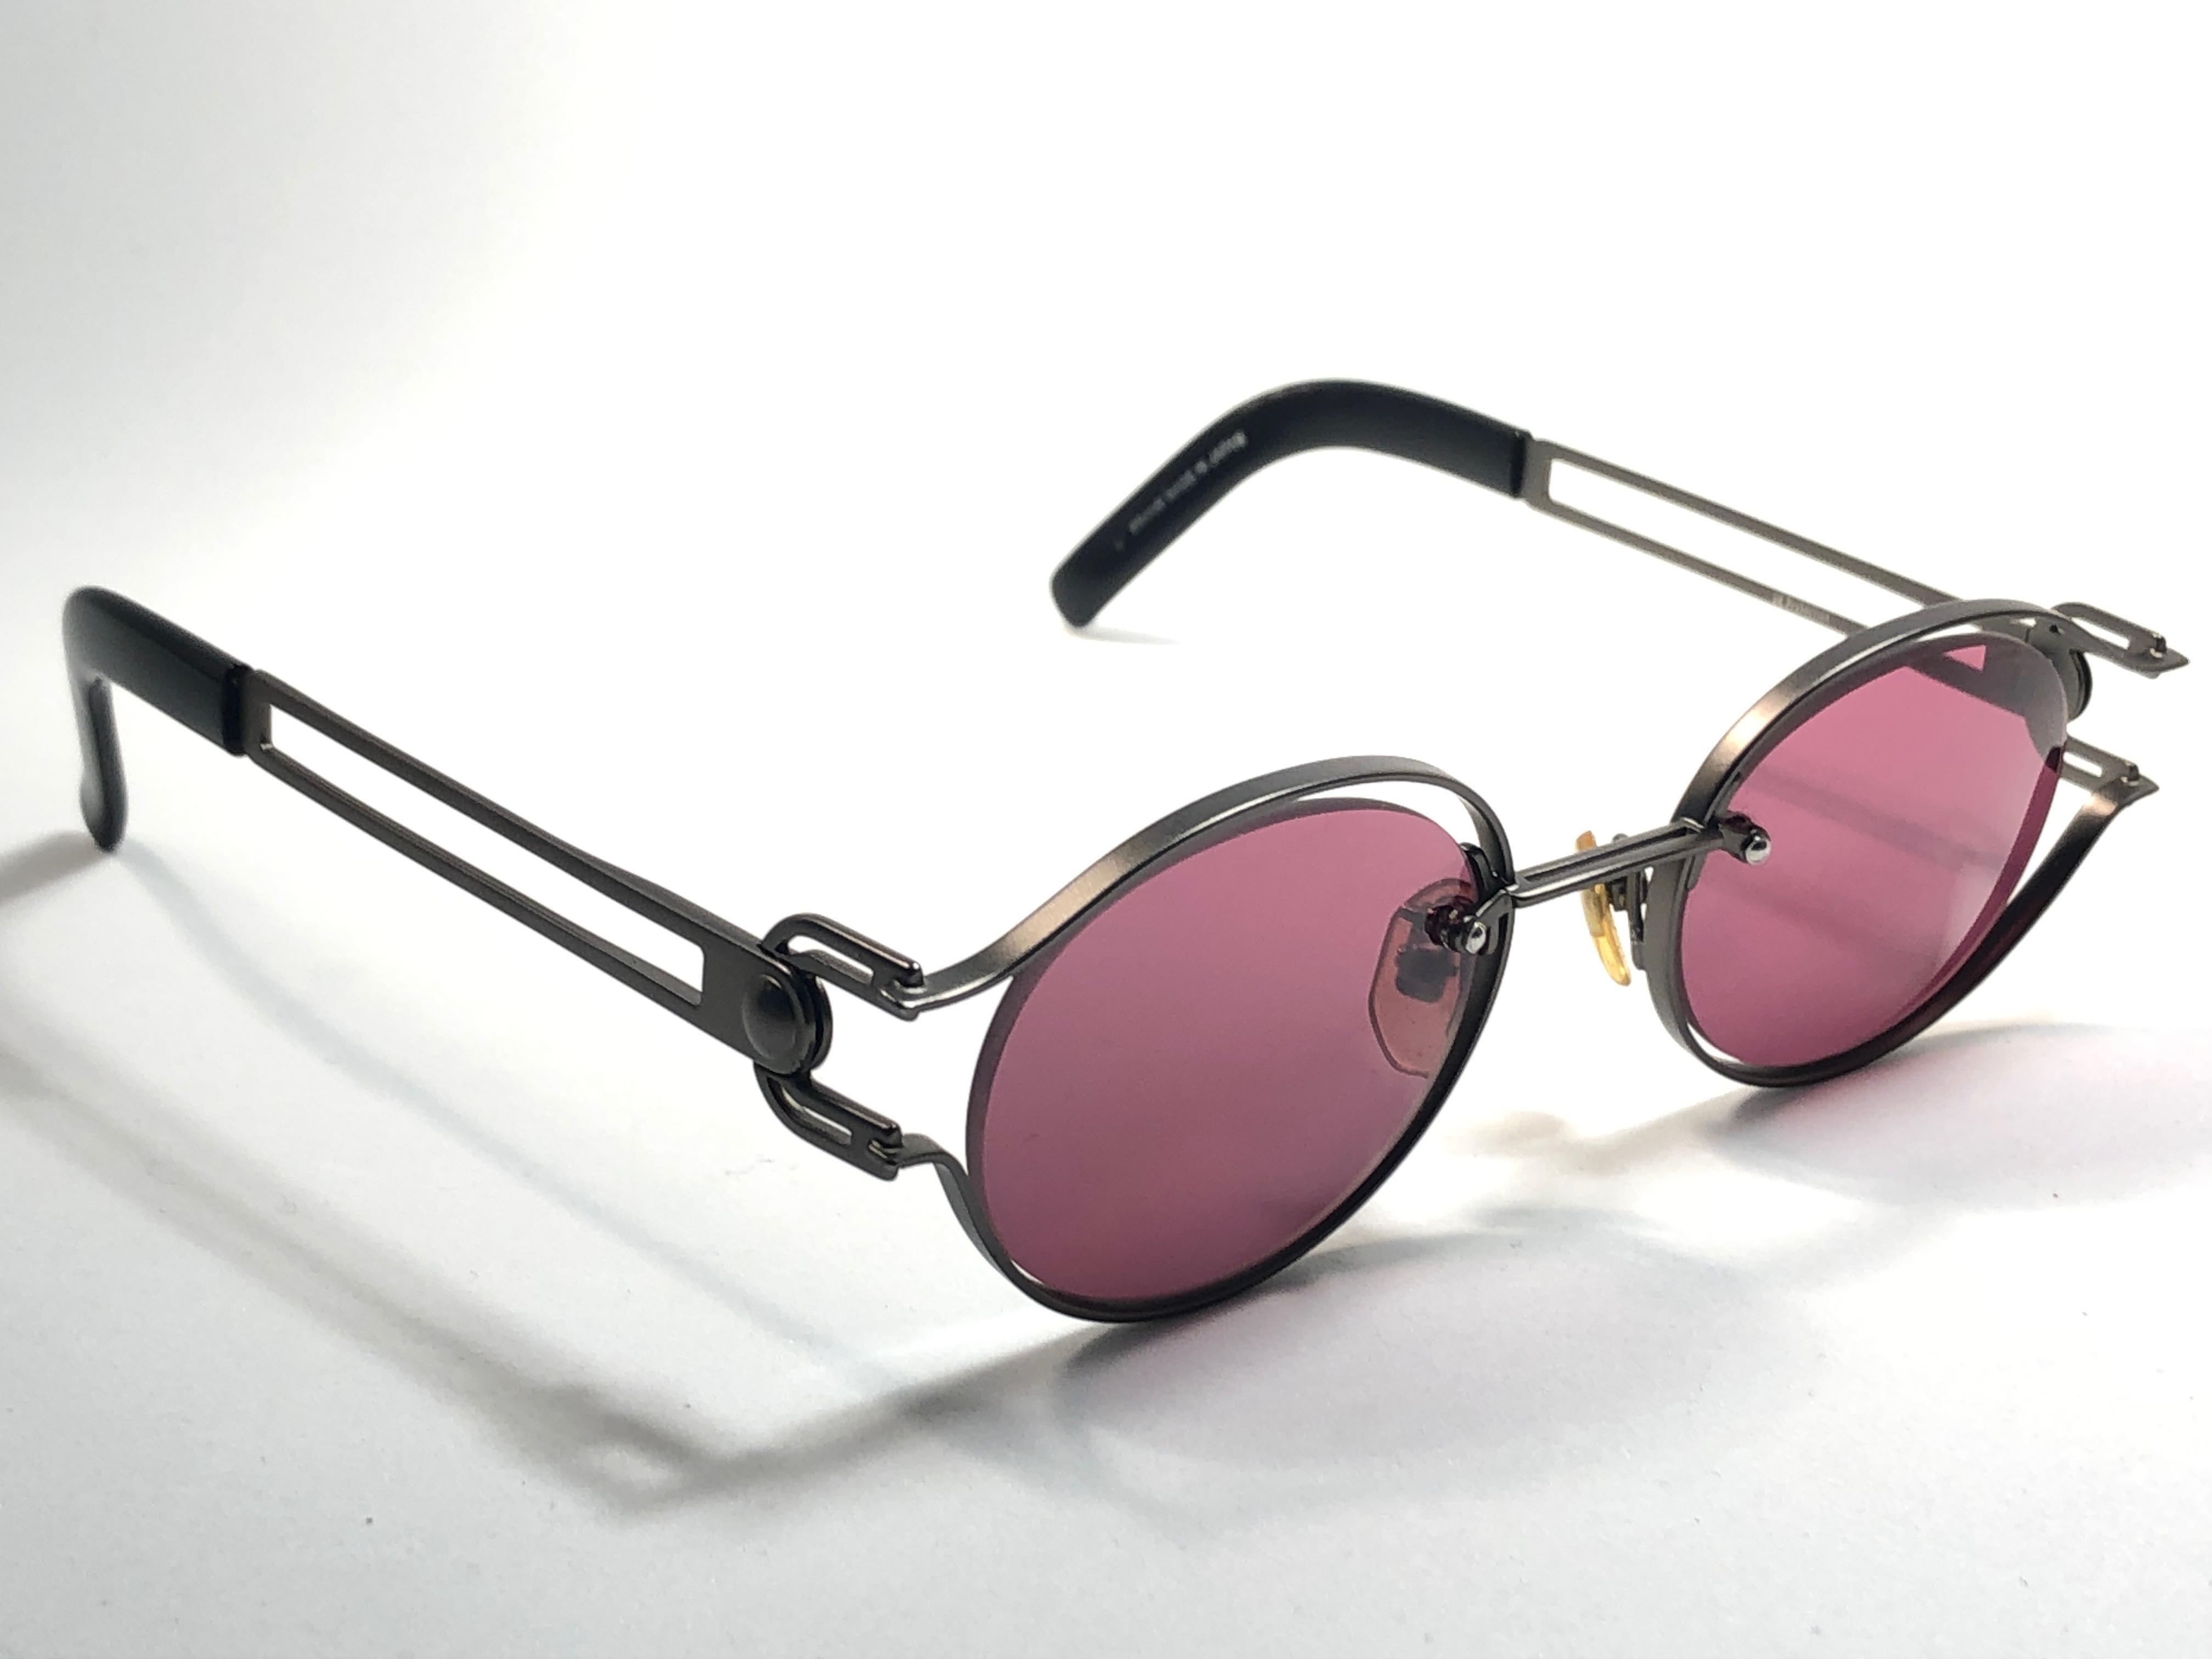 Le créateur culte Yohji Yamamto a signé cette paire de lunettes de soleil ultra chic au design argenté mat.   

Verres gris moyen sans tache.  Qualité et conception supérieures. Boîtier original. 

Cet article présente des signes mineurs d'usure dus